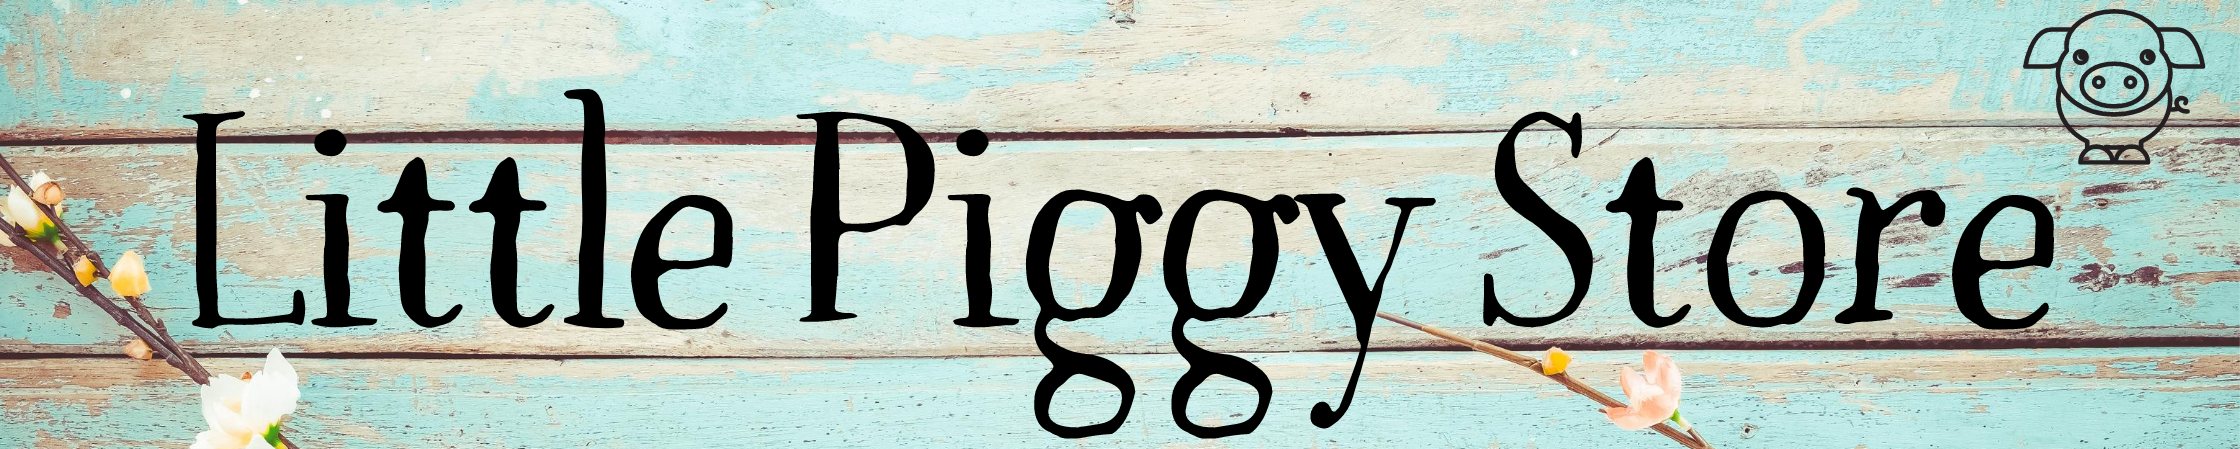 Little Piggy Store